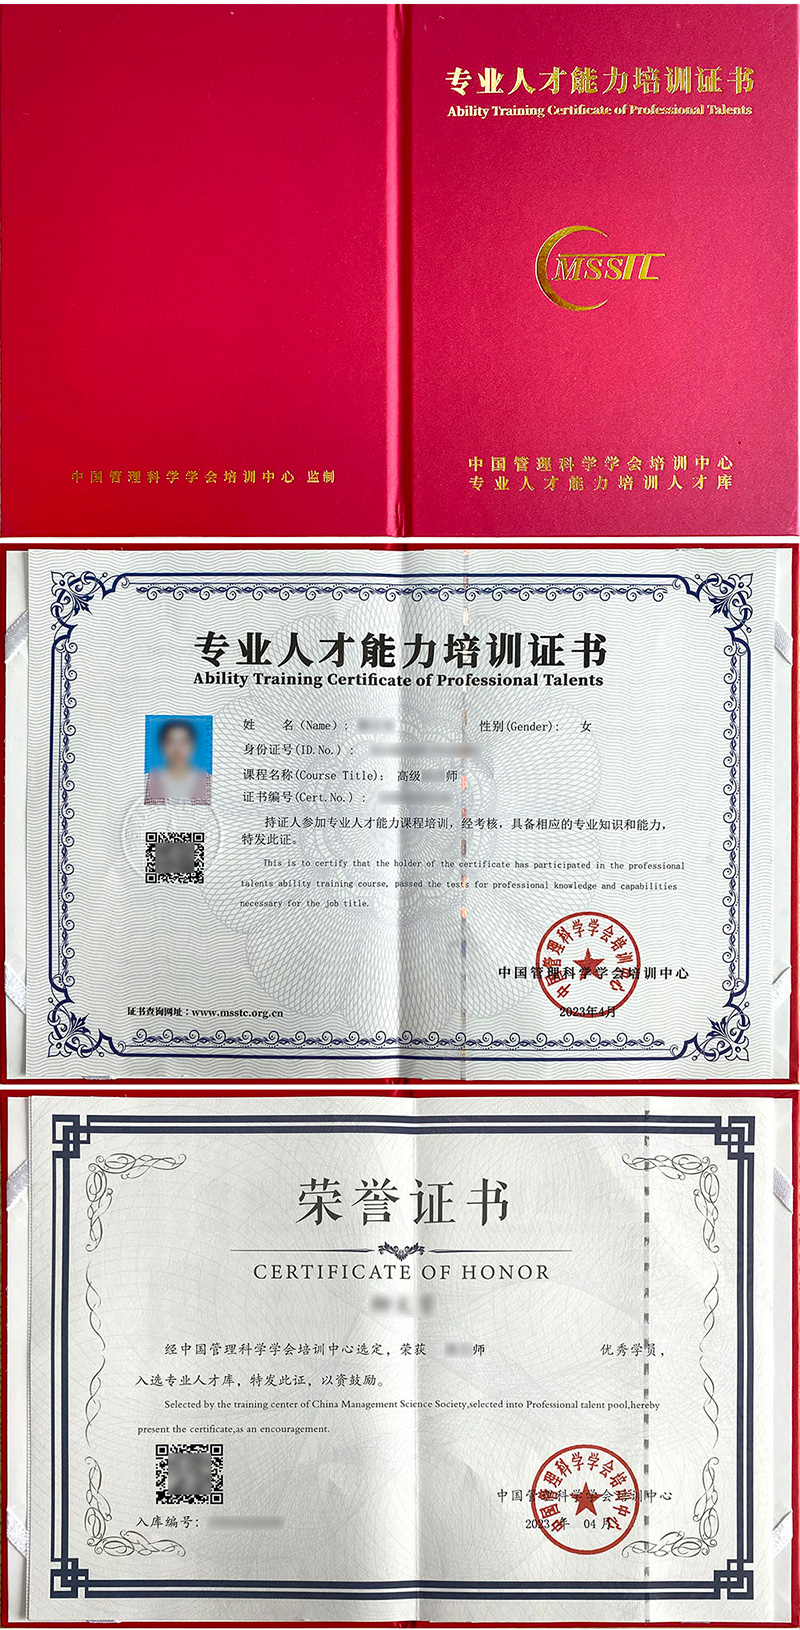 中国管理科学学会培训中心 专业人才能力培训证书 中医整脊调理师证证书样本